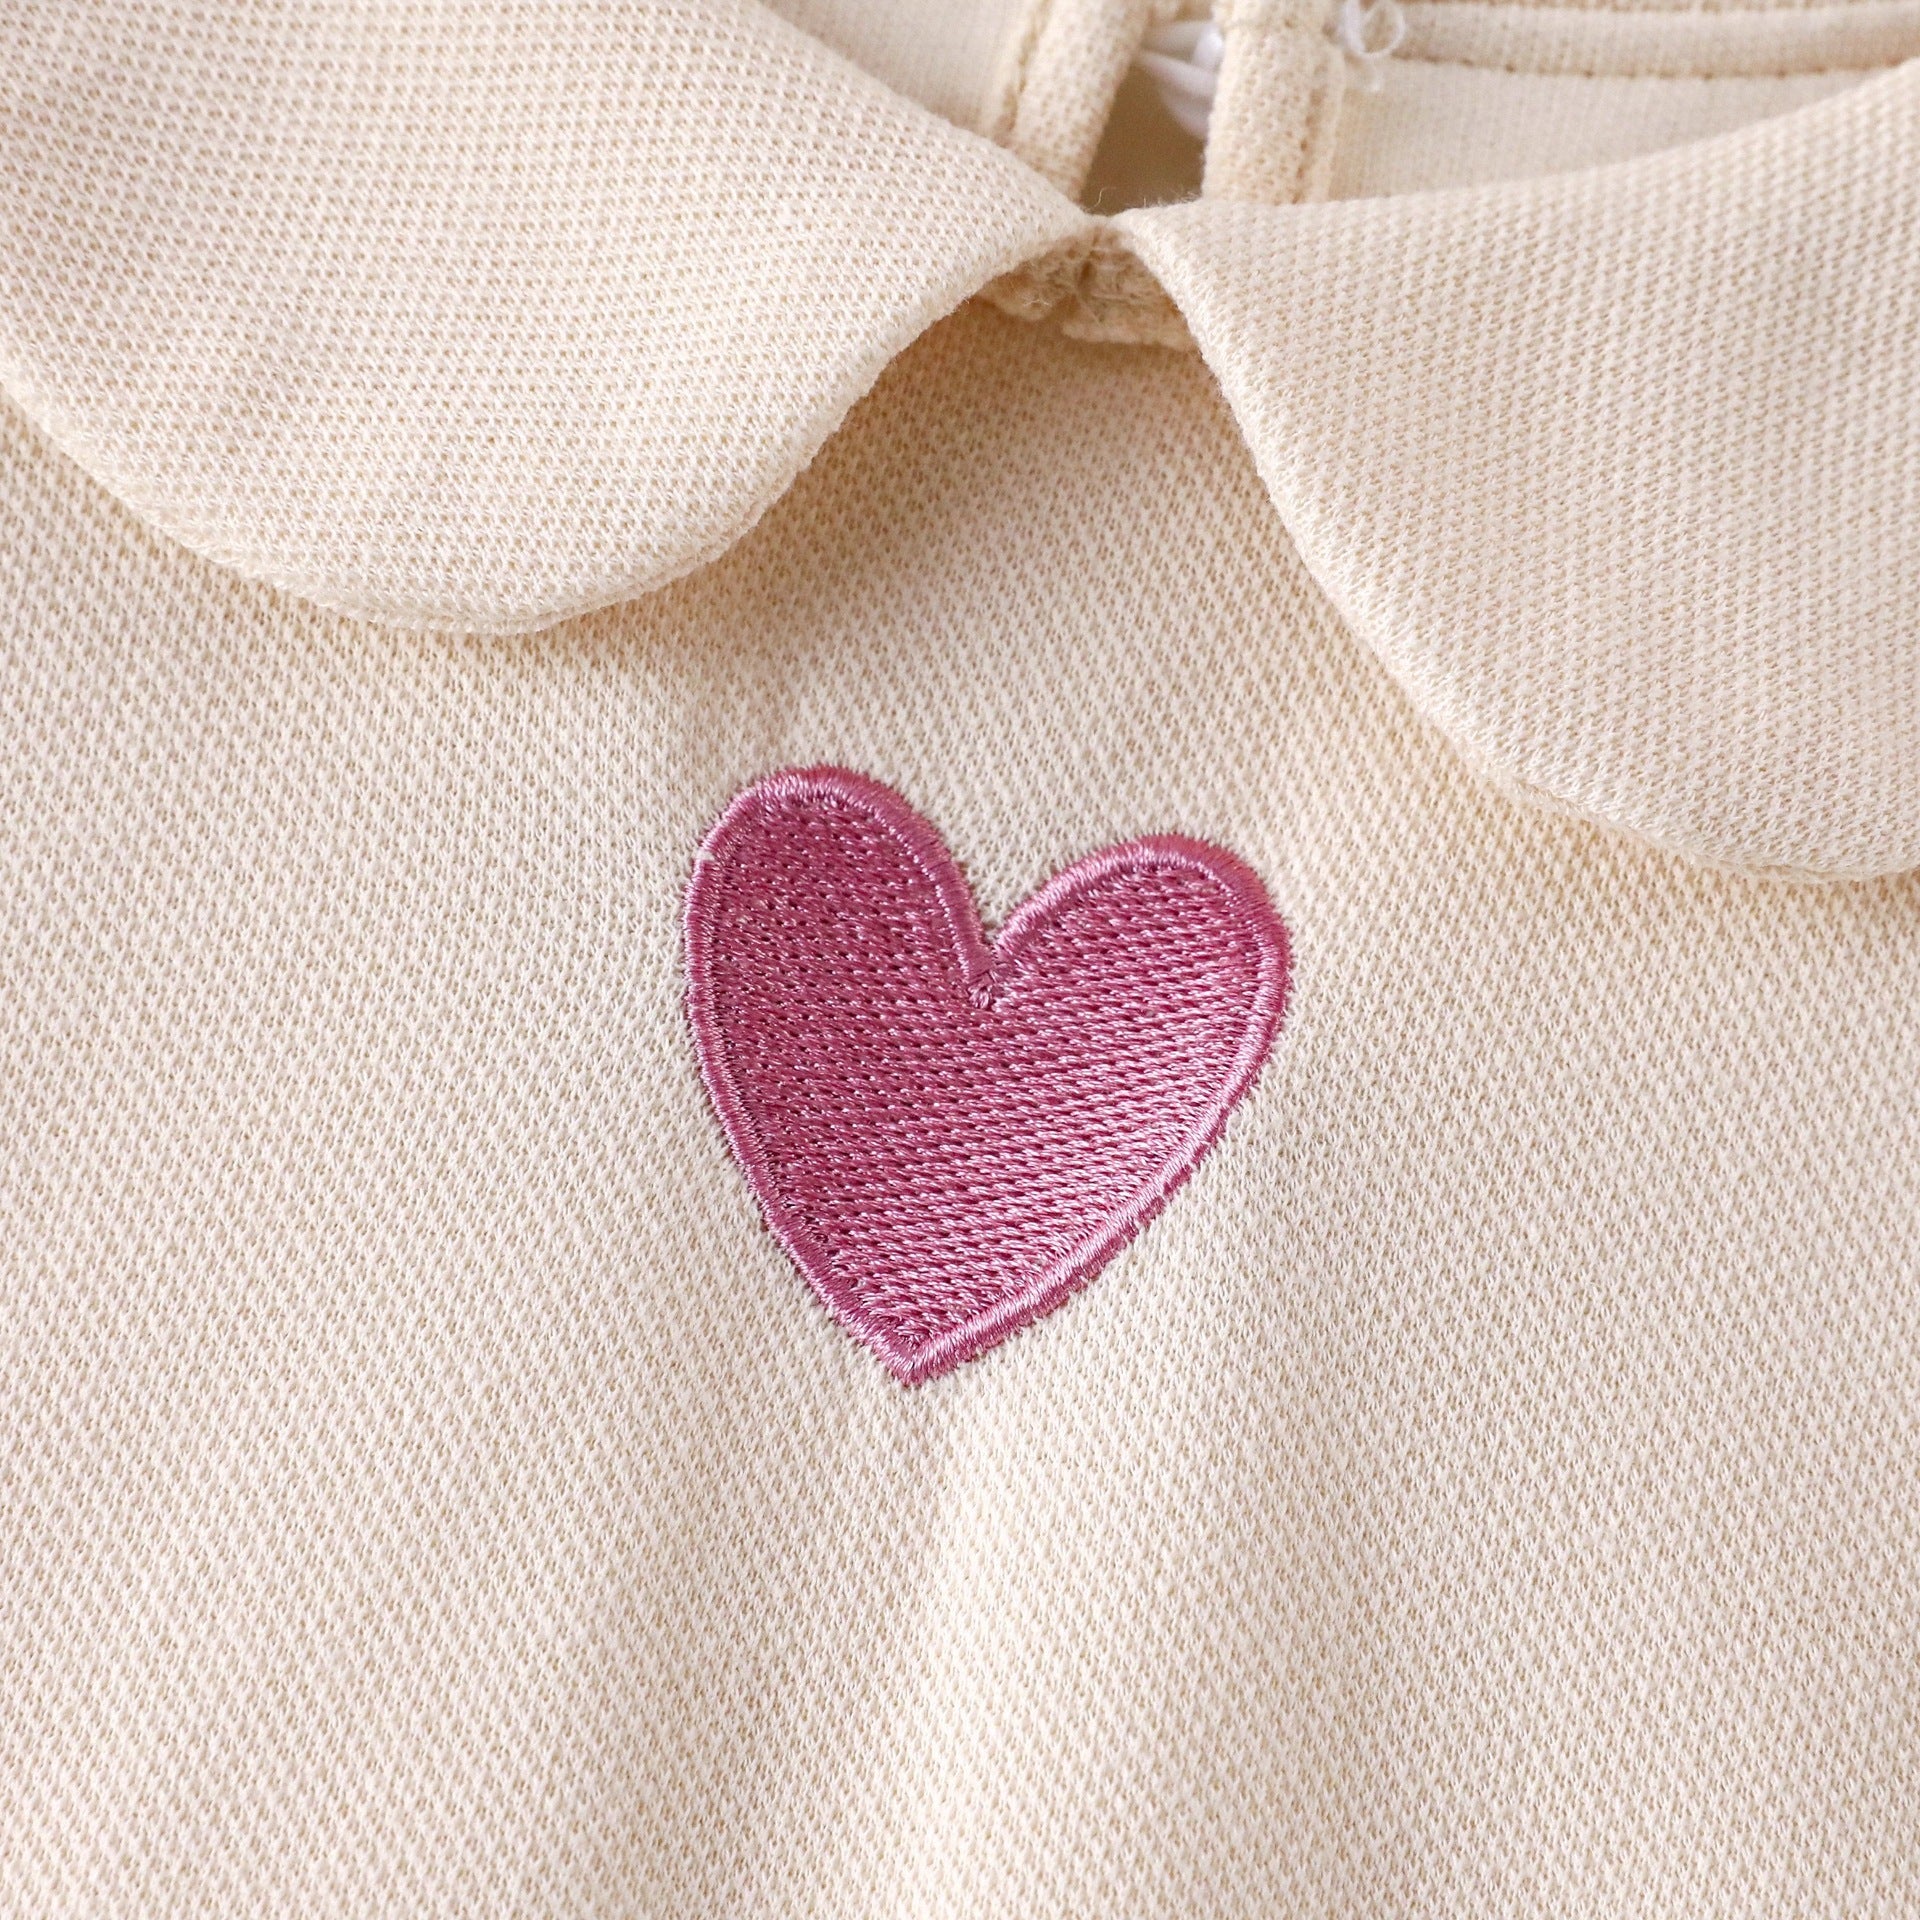 [721107] - Baju Atasan Blouse Lengan Pendek Ruffle Anak Perempuan - Motif Plain Heart